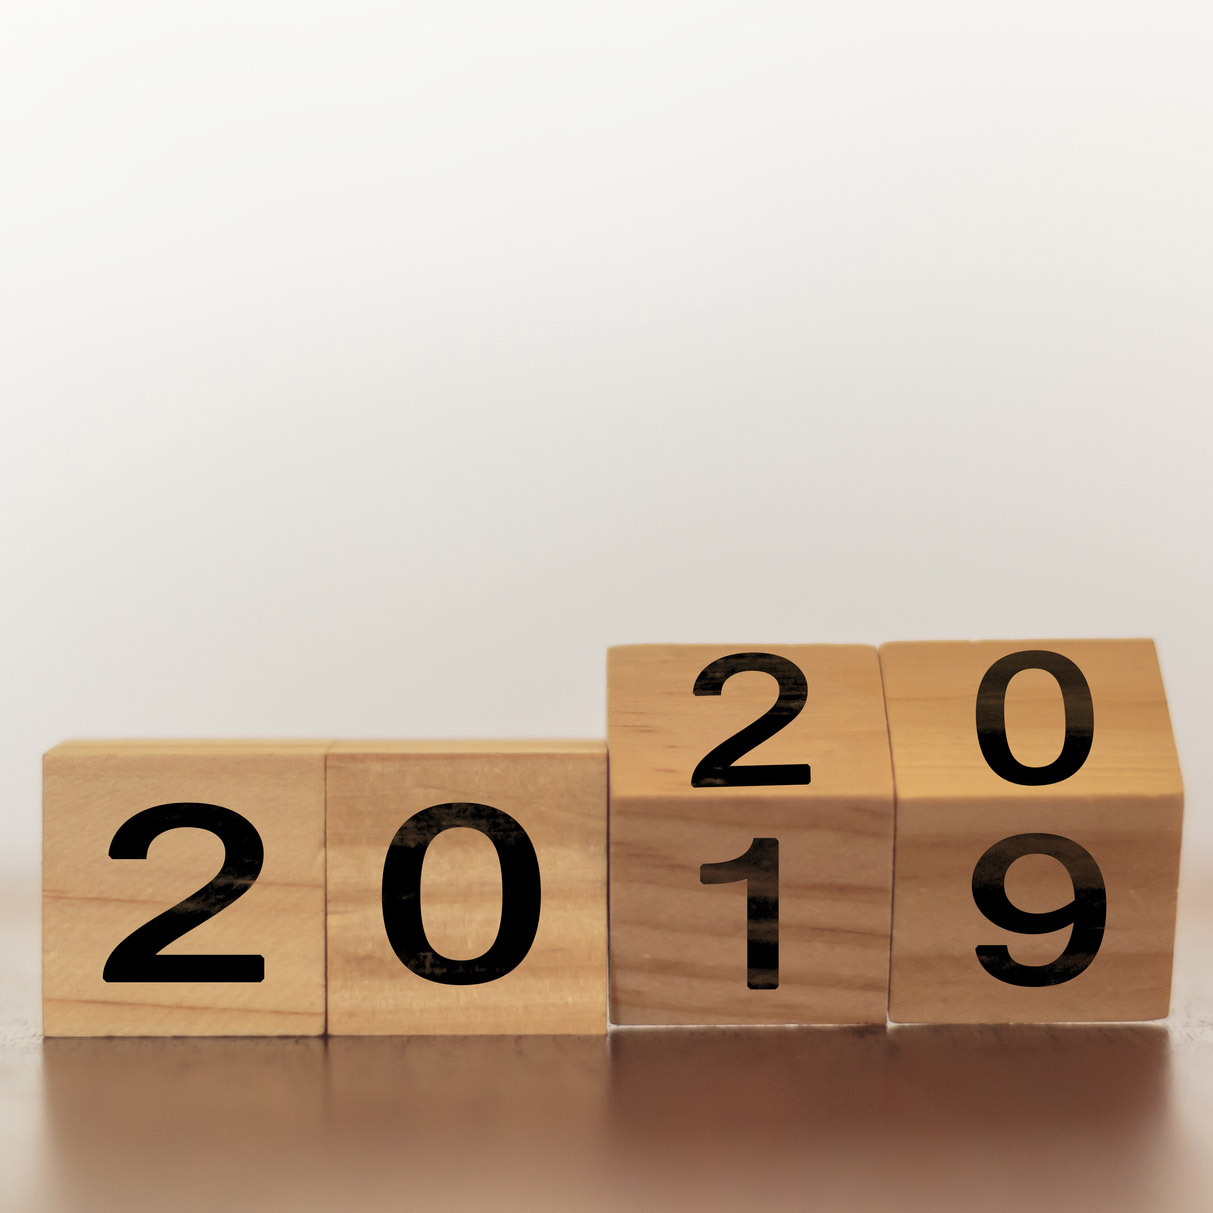 2019-20 Financial Year Calendar - Free Download | Kwik Kopy